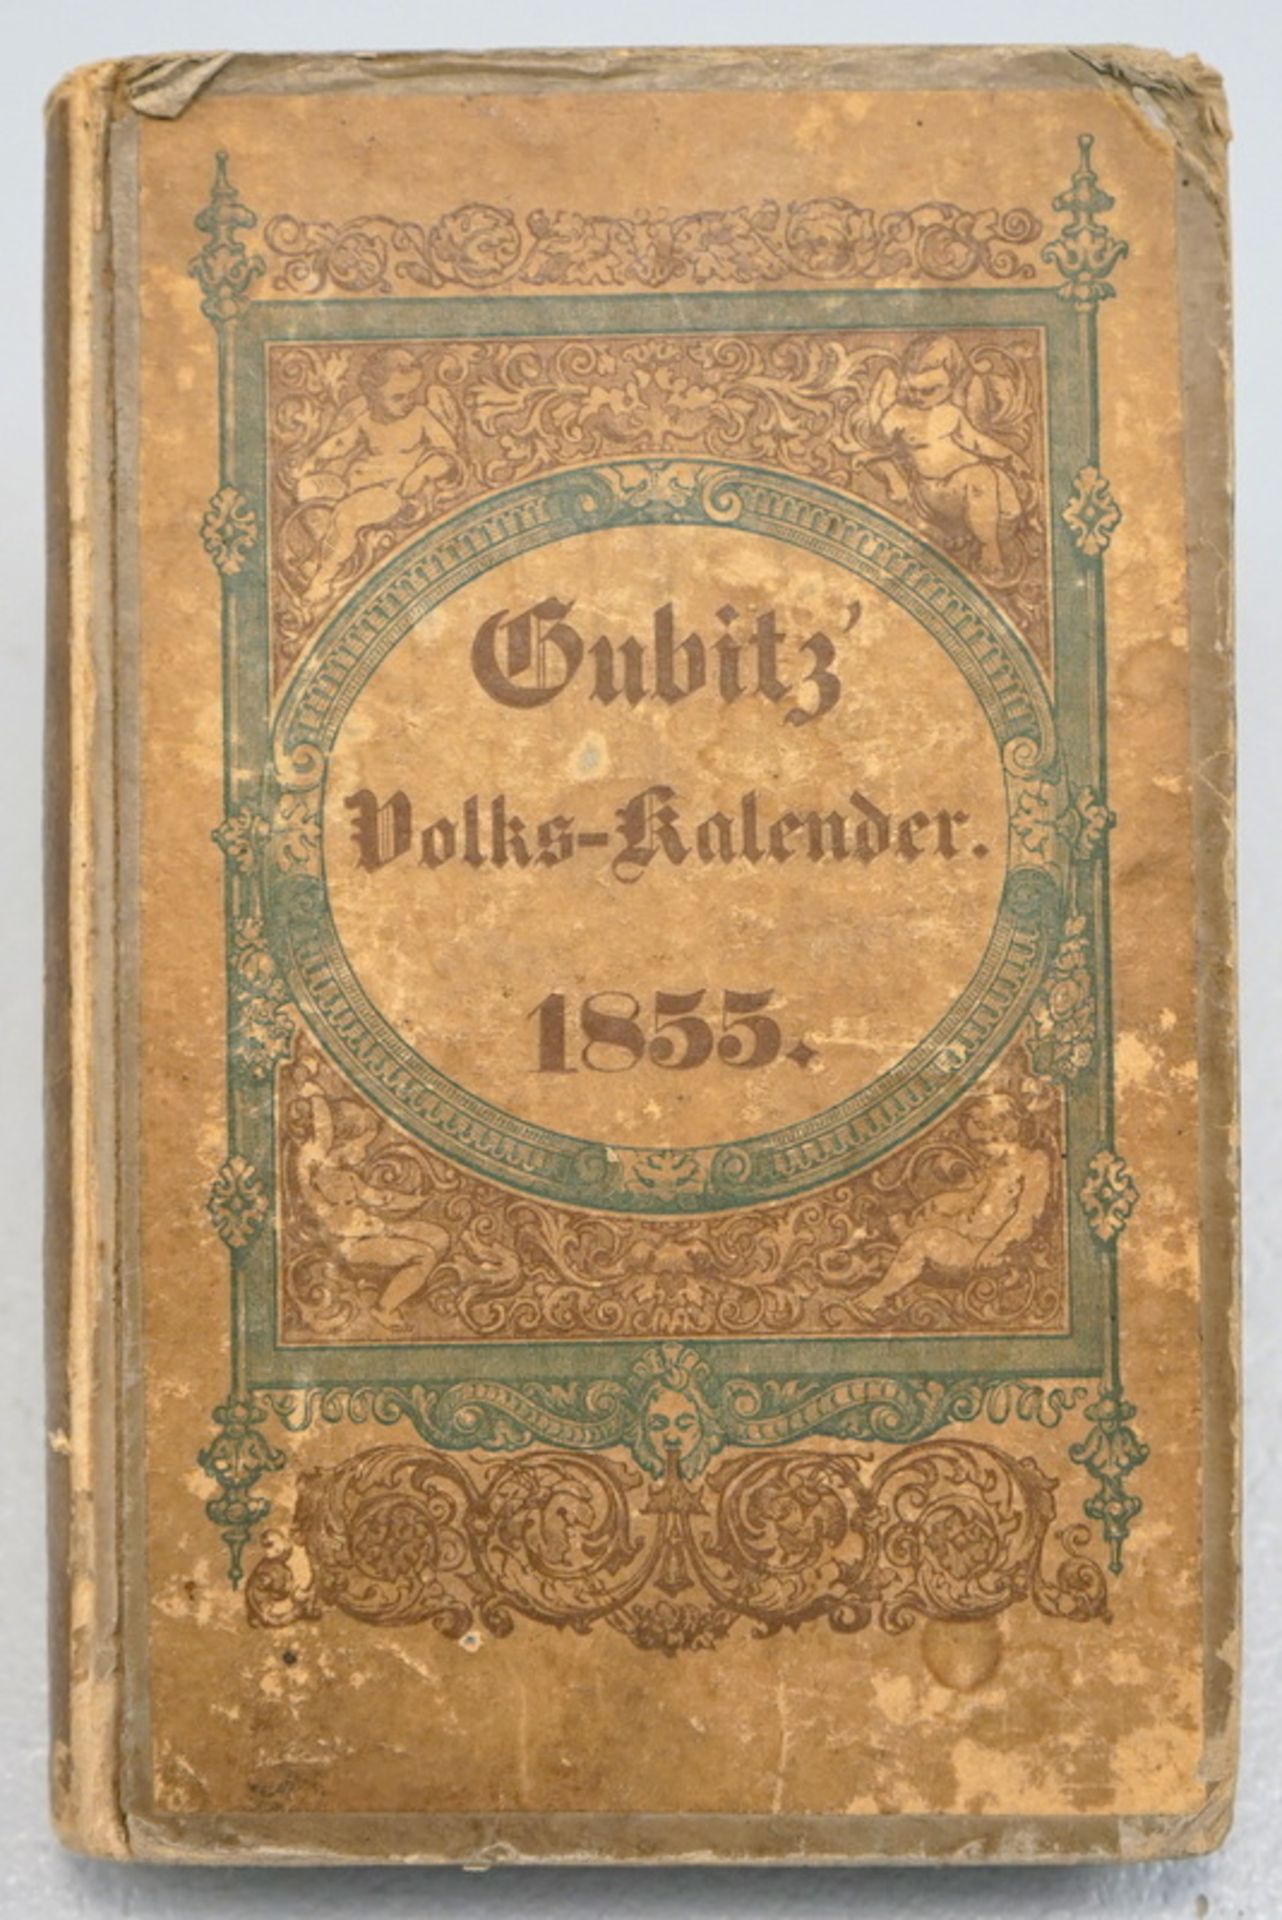 Gubitz Volkskalender von 1855,mit 120 Holzschnitten, verlegt in der Vereinsbuchhandlung Berlin, 17,2